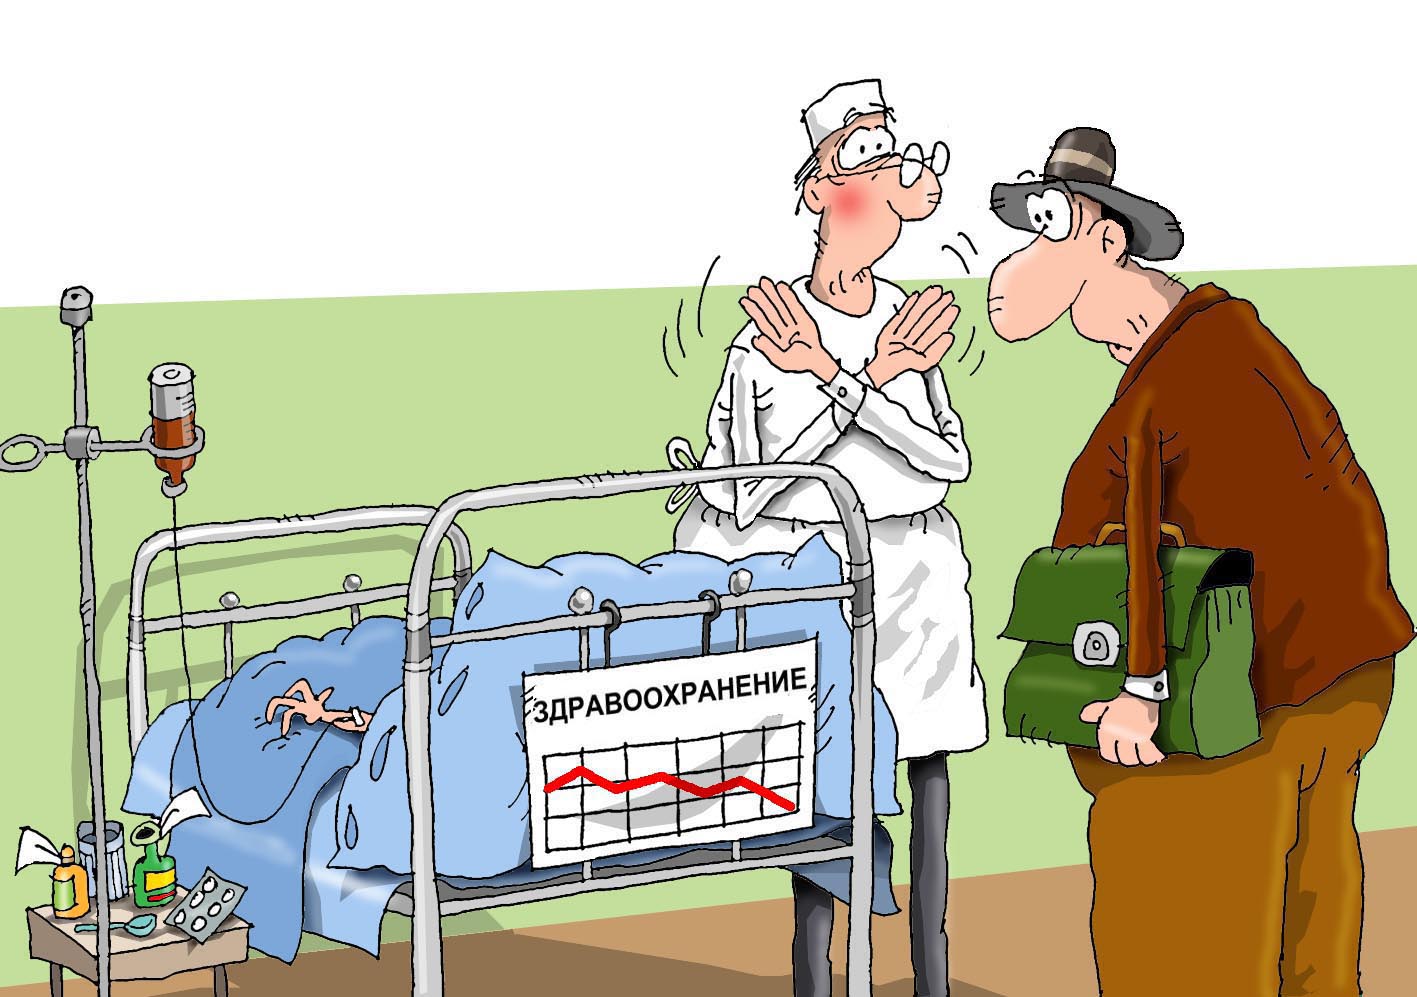 Тяжелая жизнь врача. Медицинские карикатуры. Медицина карикатура. Здравоохранение карикатура. Врач и пациент карикатура.